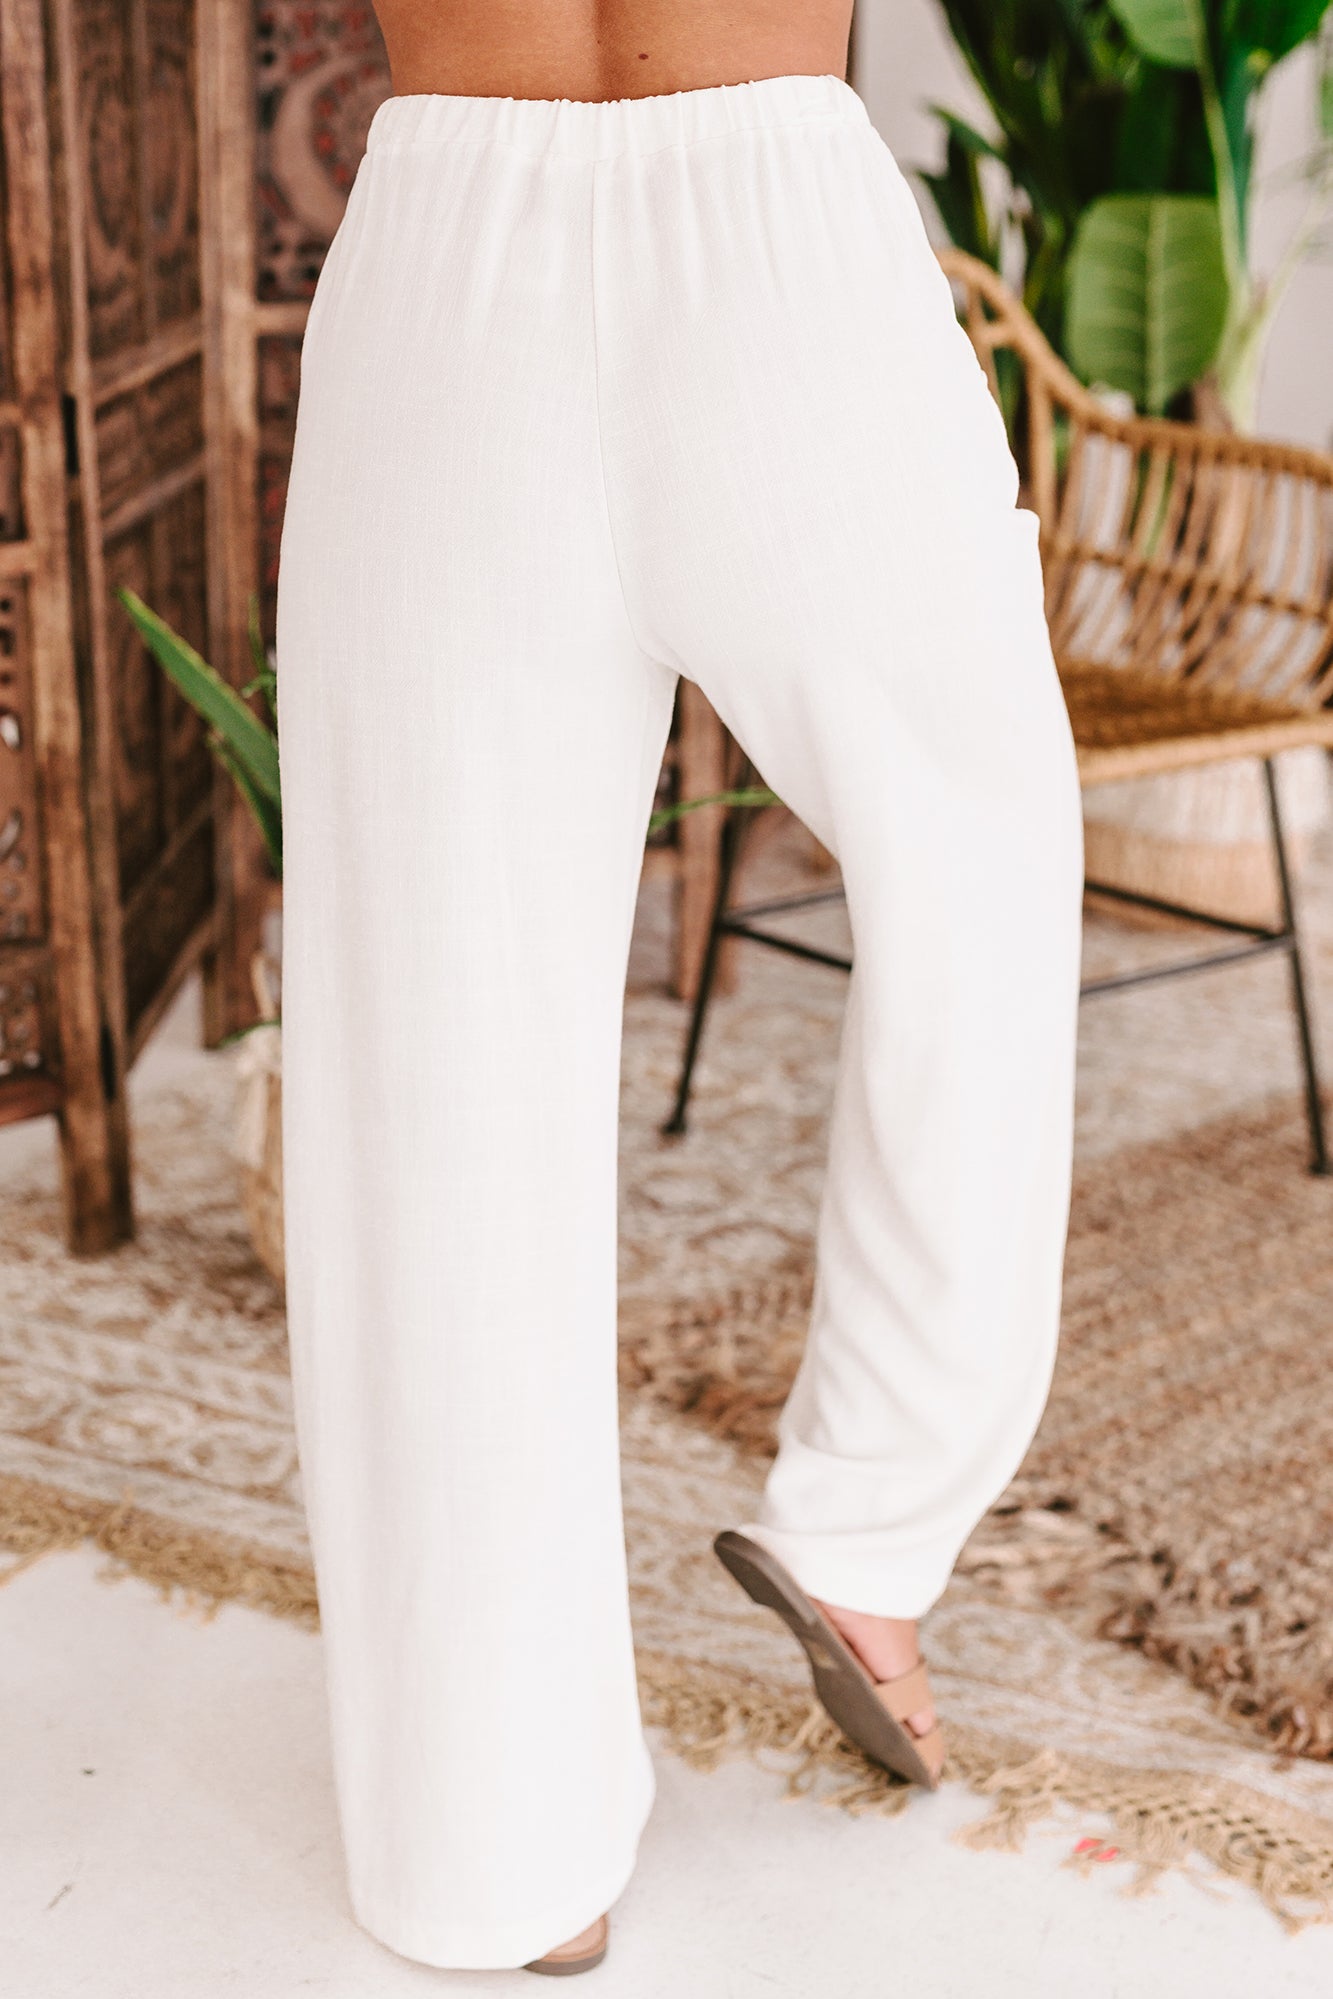 Subtle Sophistication High Waisted Wide Leg Linen Pants (Ivory) - NanaMacs